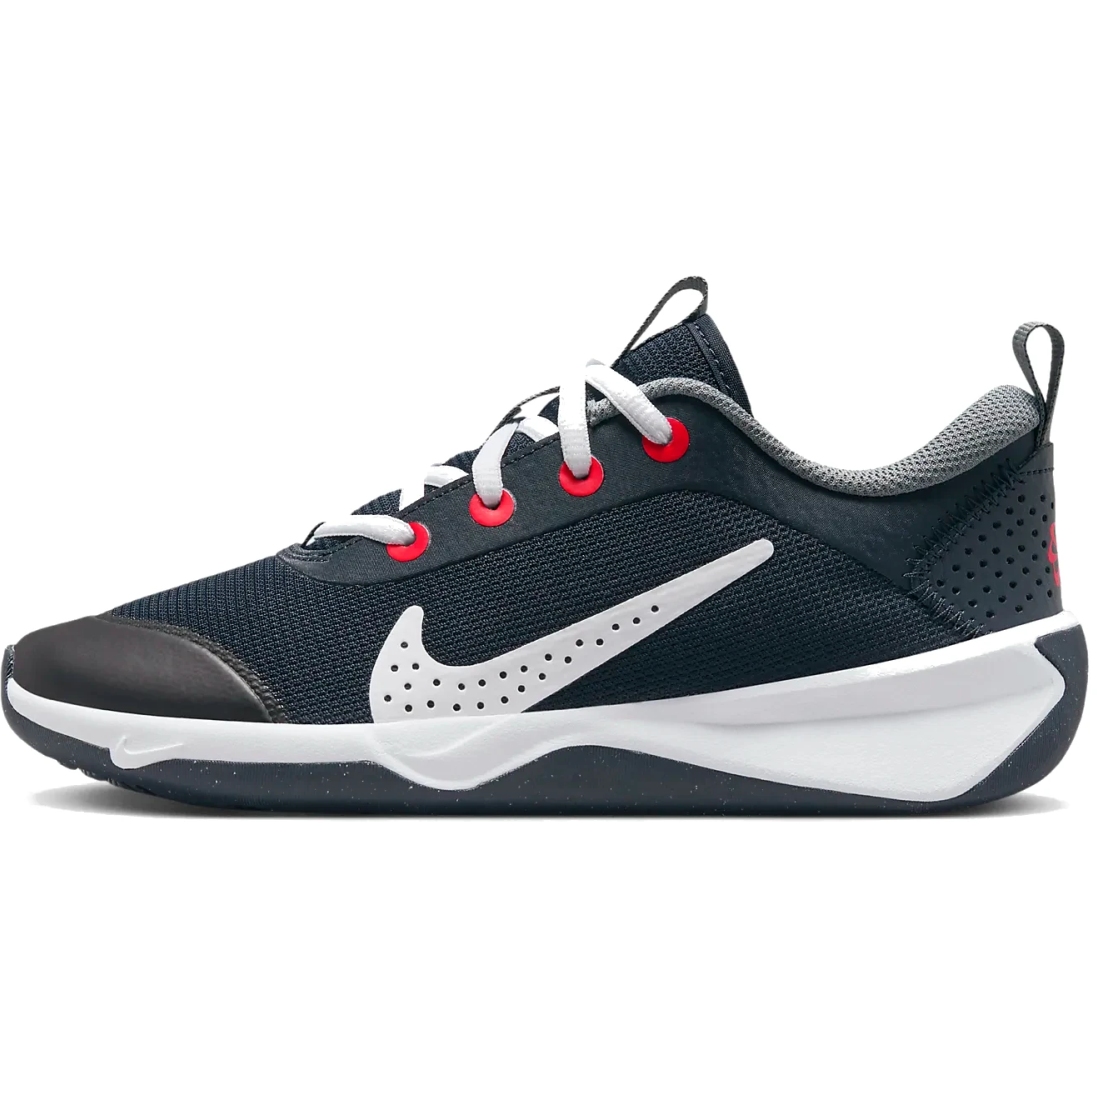 Immagine di Nike Scarpe Fitness Bambini - Omni Multi-Court - dark obsidian/smoke grey/bright crimson/white DM9027-402